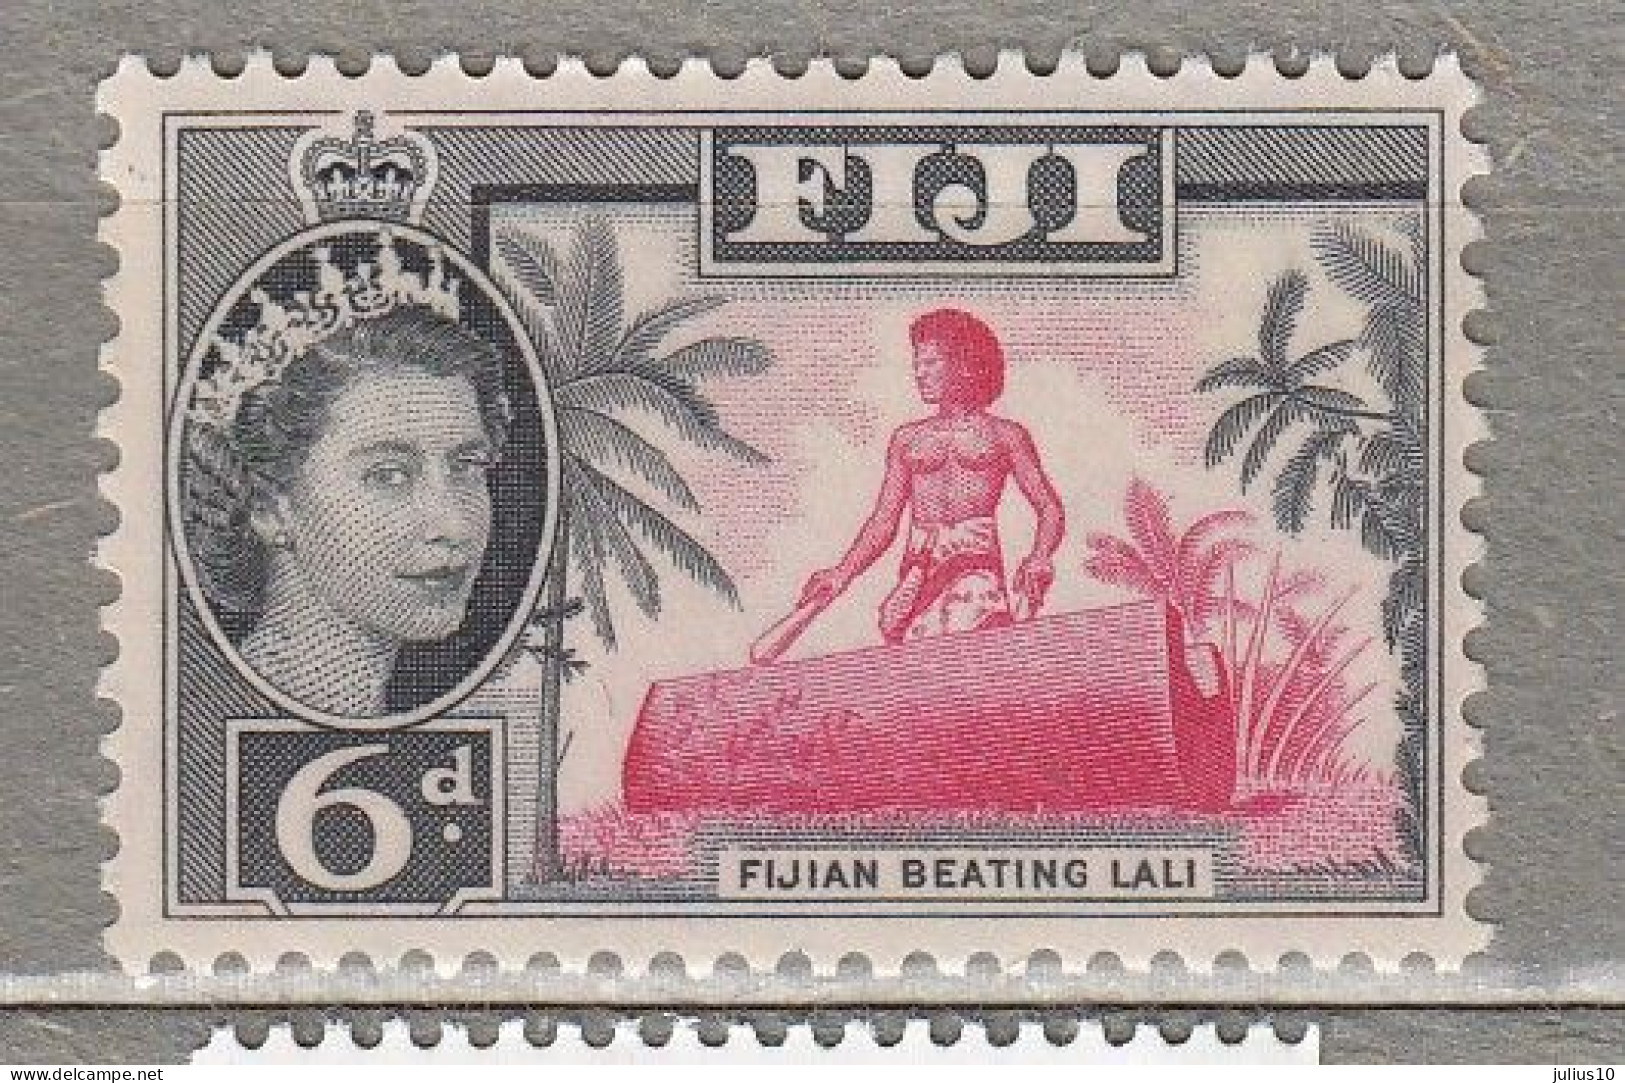 FIJI 1961 Music Instrument Lali MNH(**) Mi 146 #34353 - Fiji (...-1970)